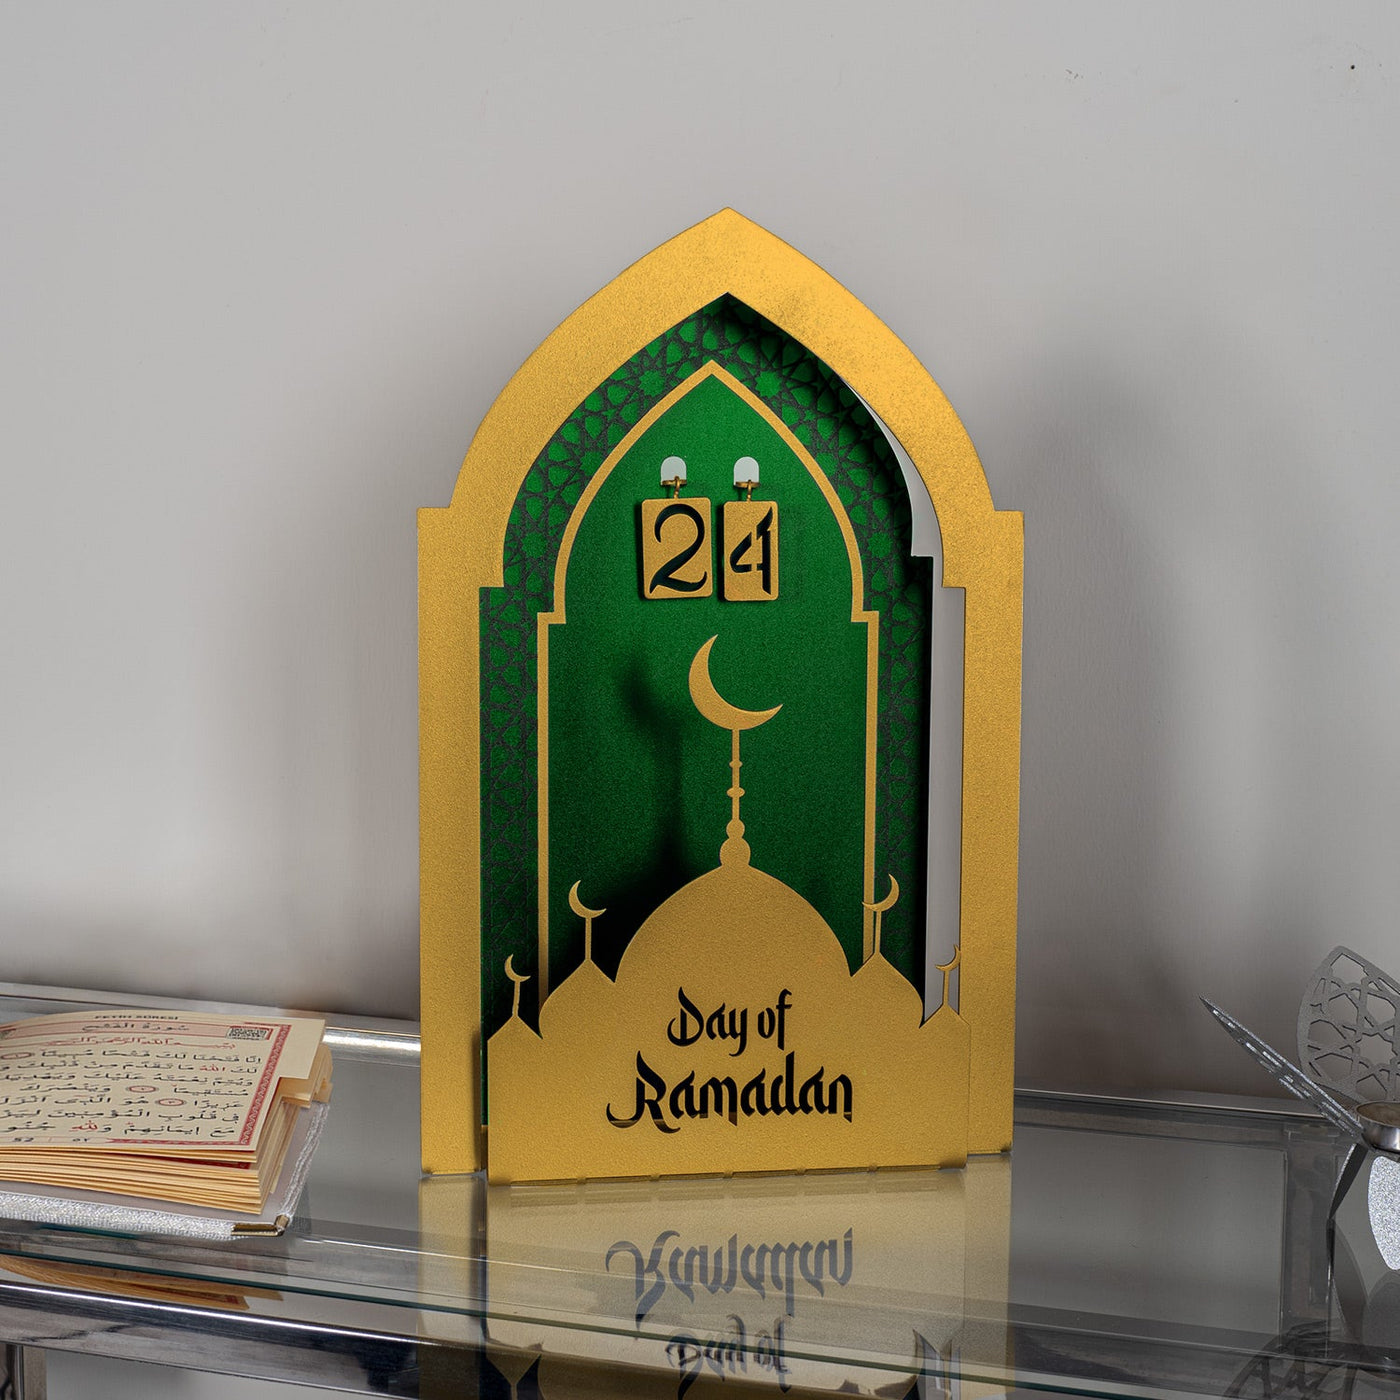 3 Boyutlu "Day of Ramadan" Yazılı Metal Masaüstü Takvimi - WAMH148